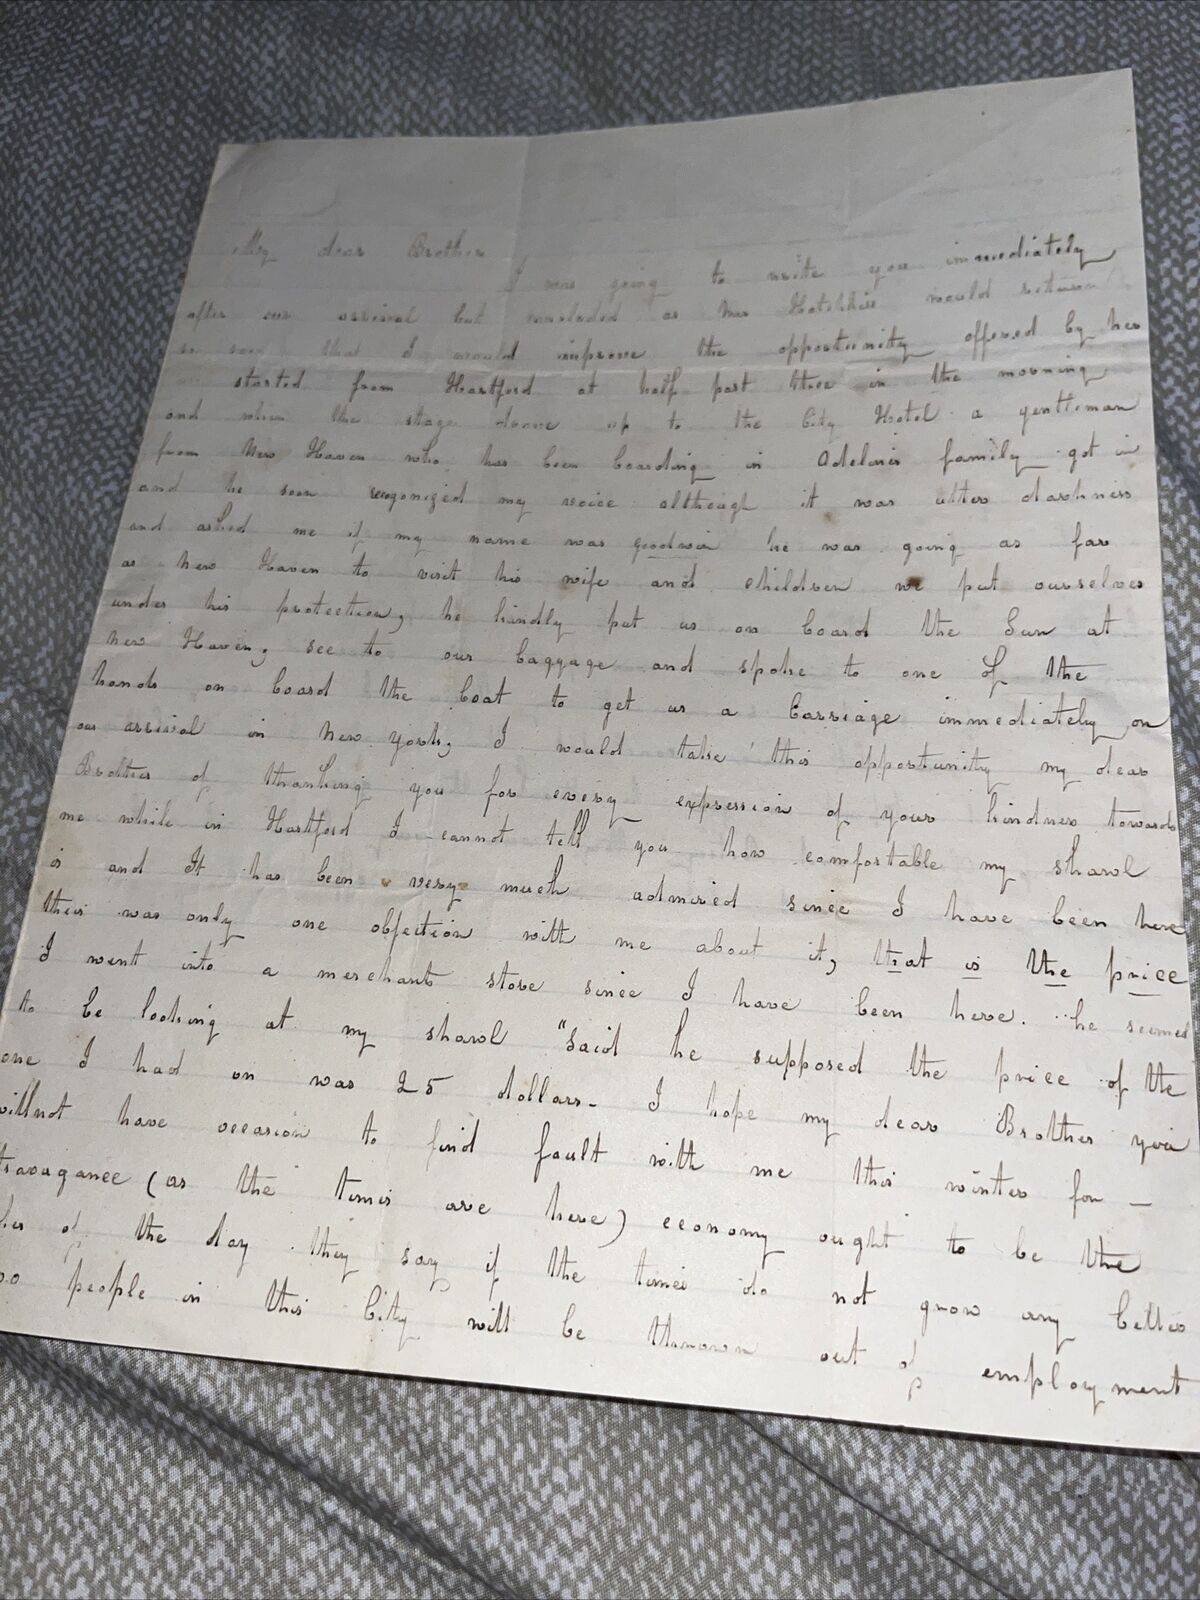 1800s Letter to Hartford CT Treasurer Family at Bank: City Hotel Charles Lamb